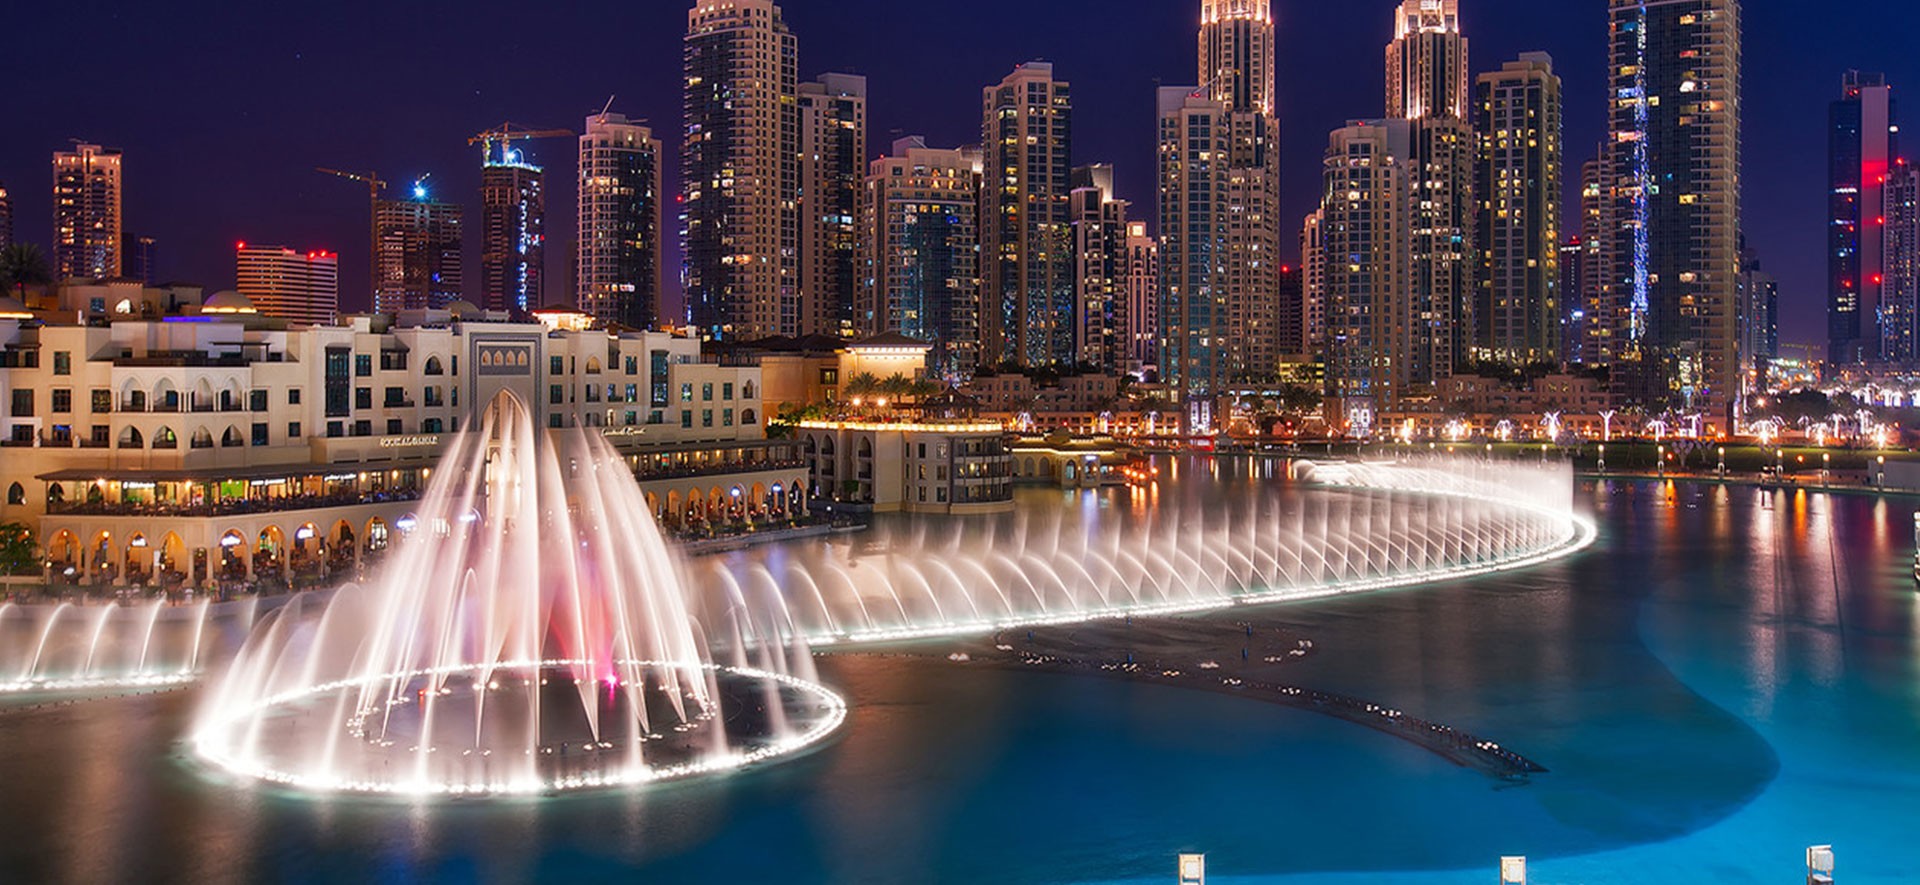 Dubai Fountain near Burj Khalifa